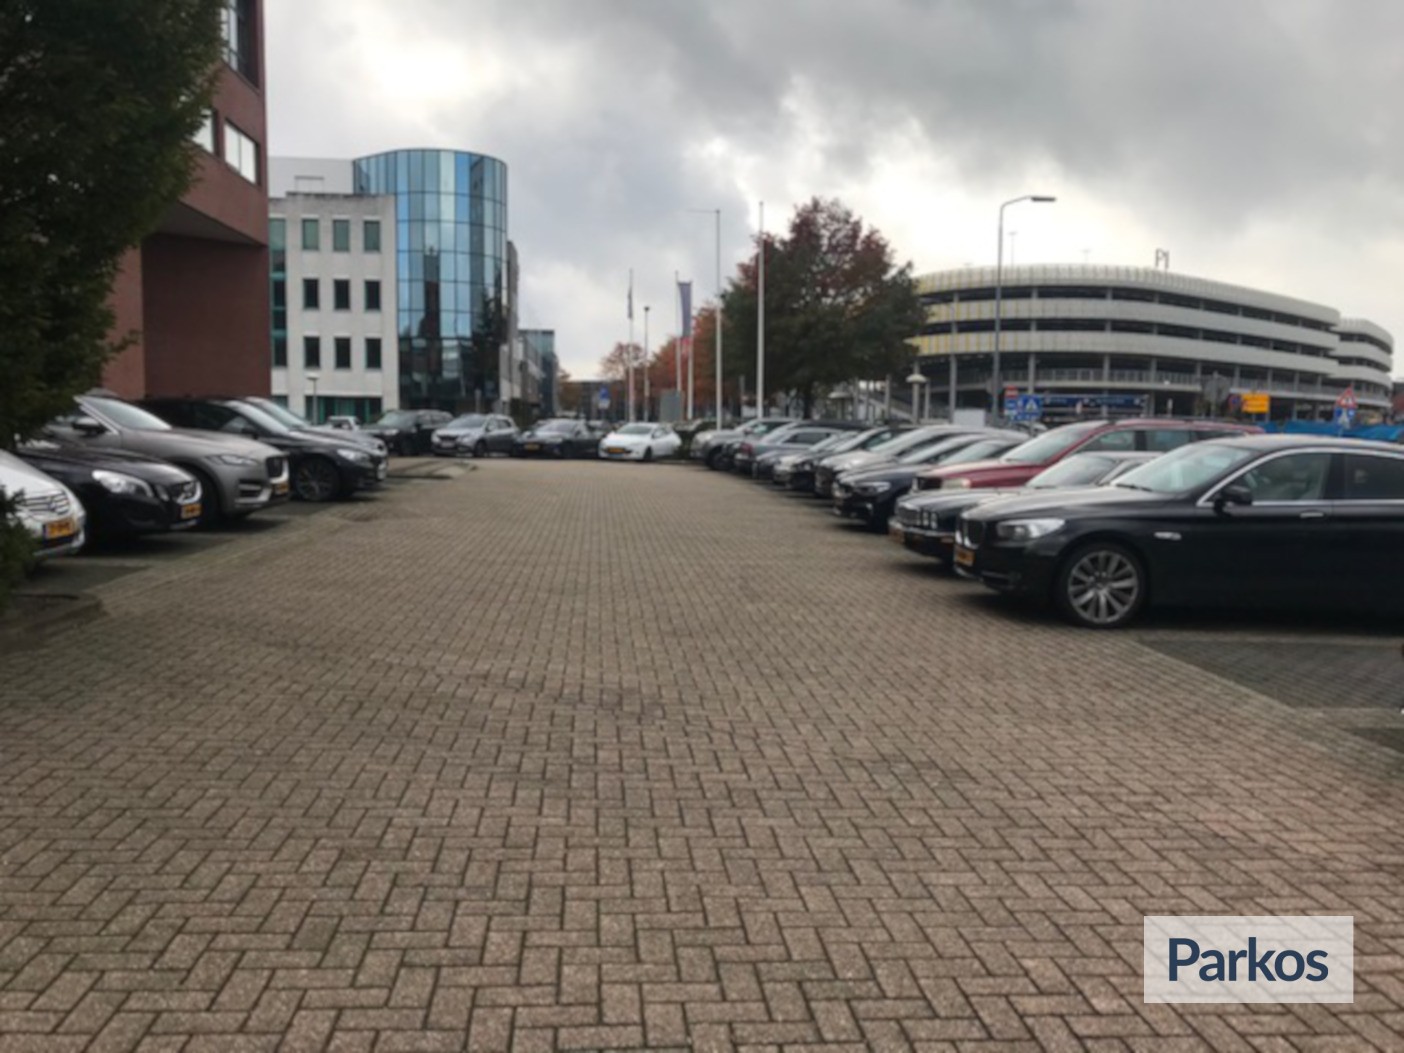 Euro-Parking - Parken Flughafen Eindhoven - picture 1